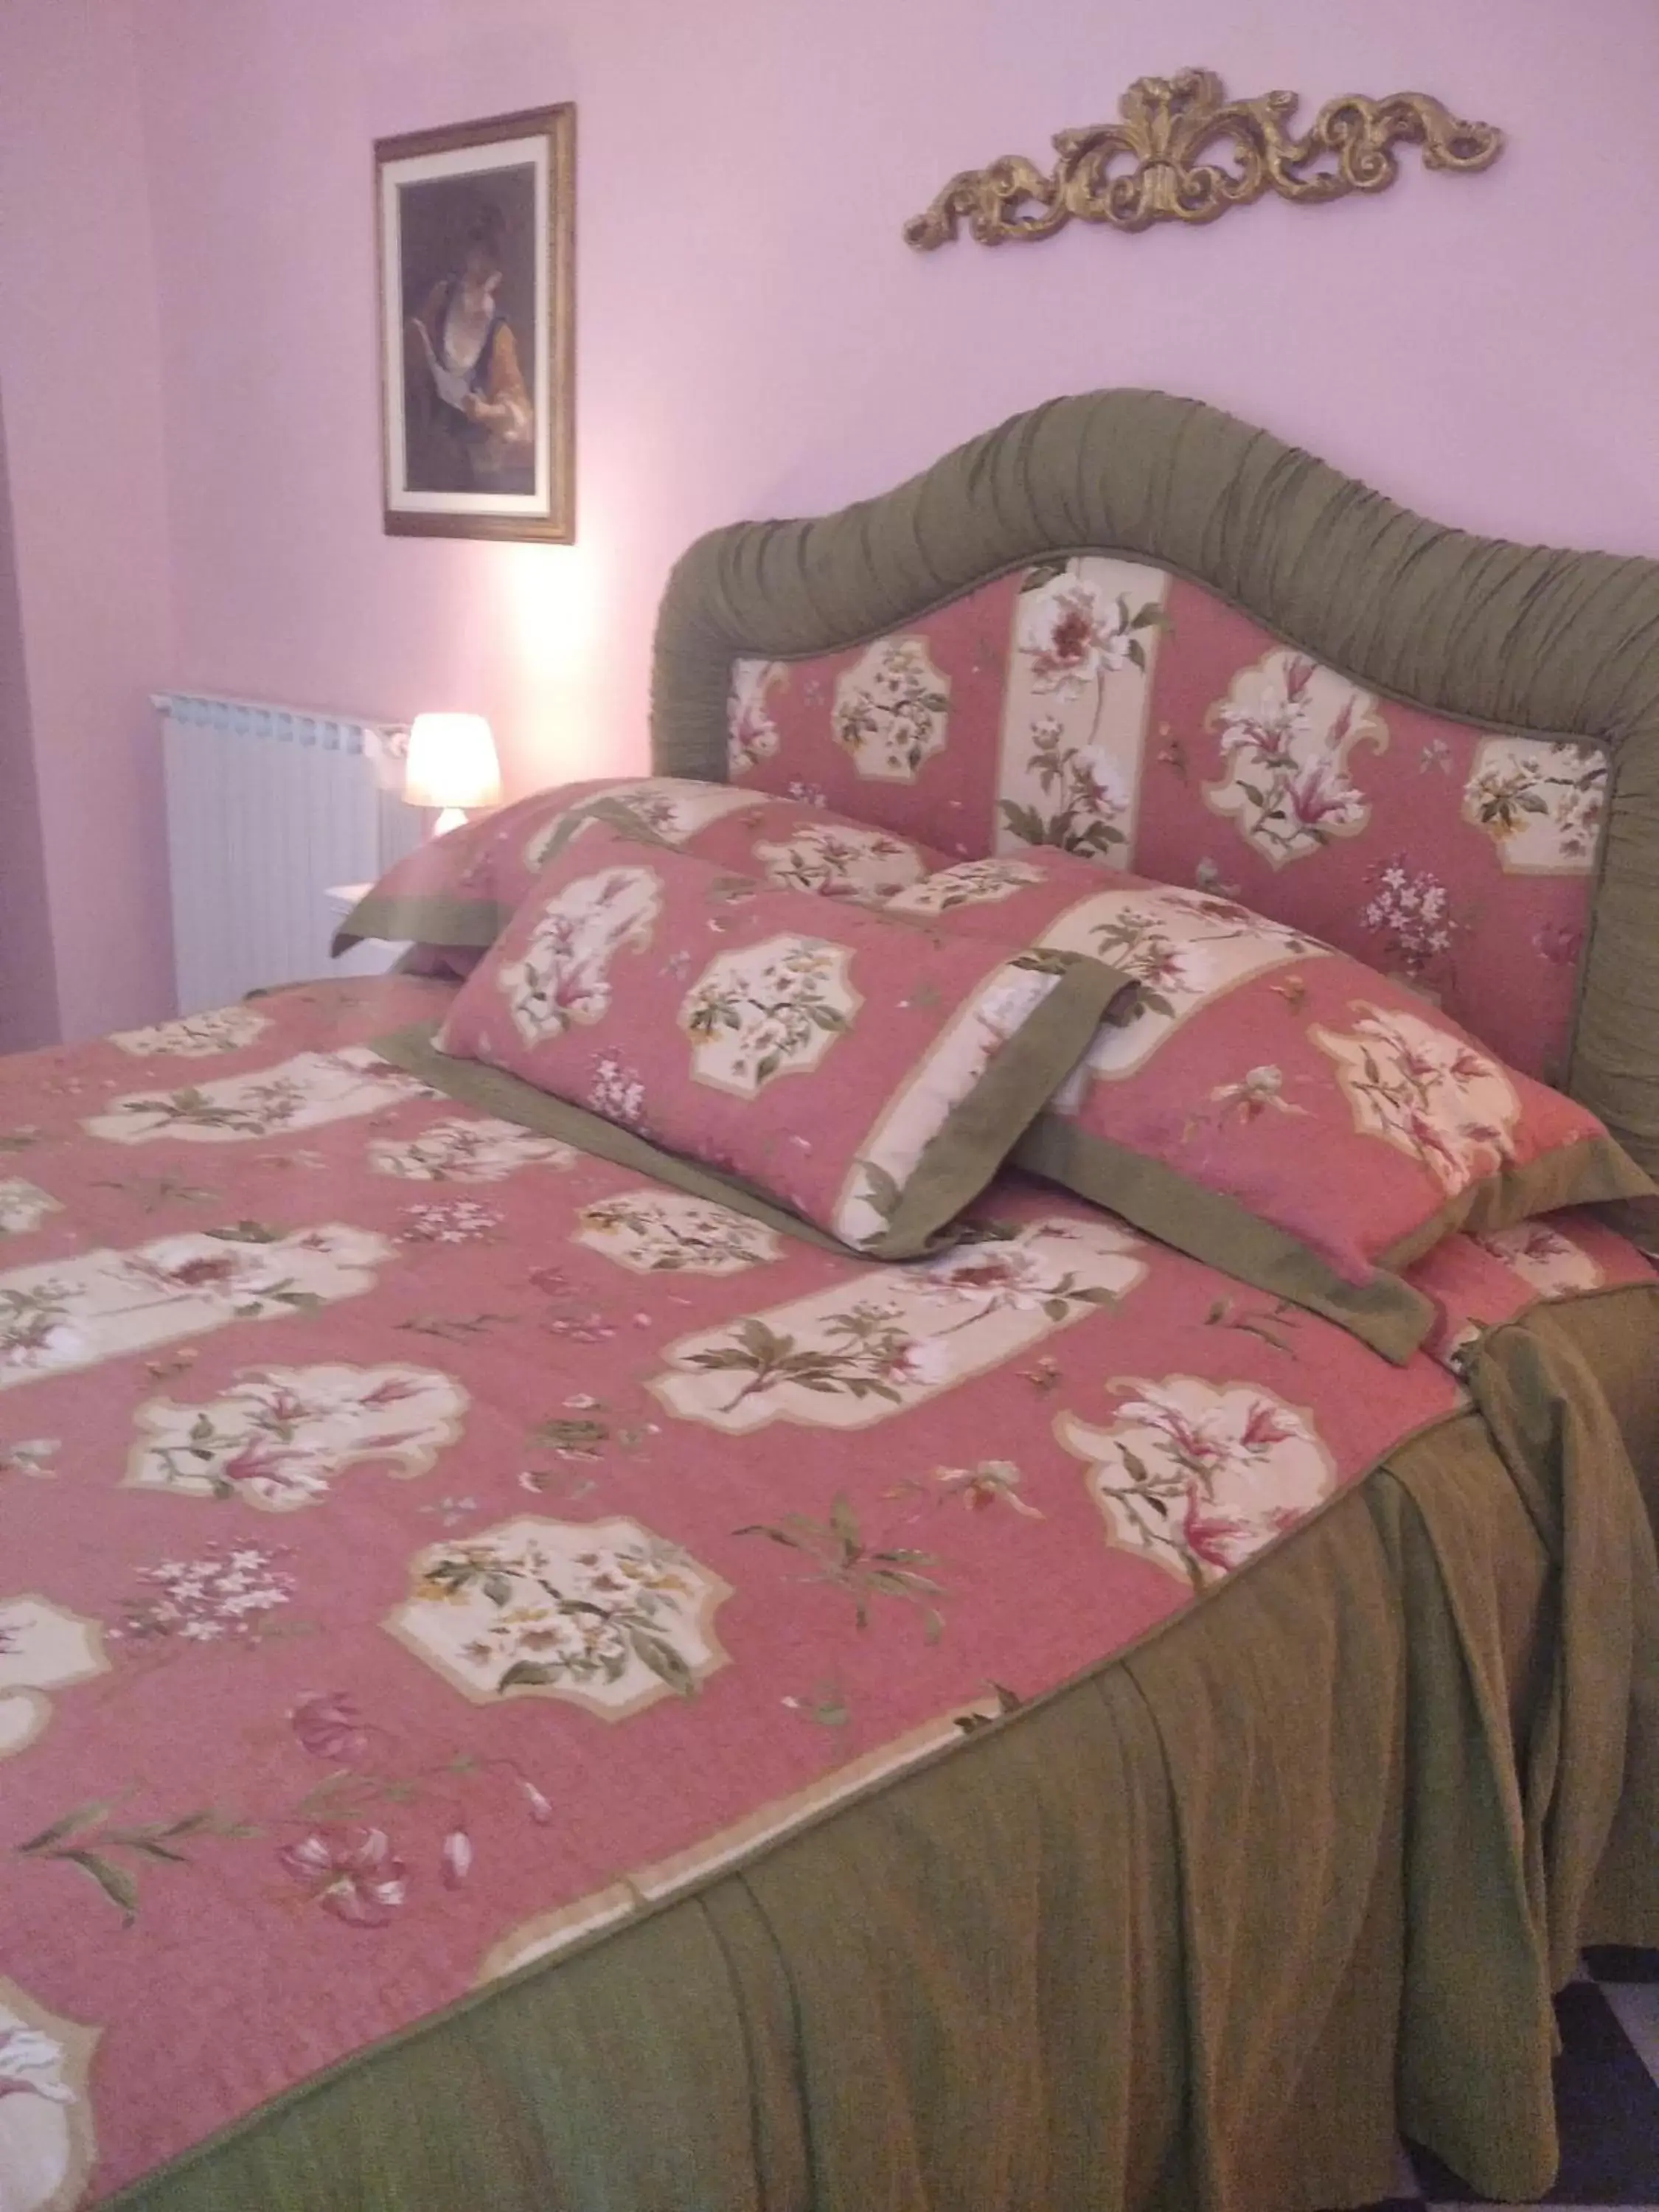 Bed in Villa Belvedere